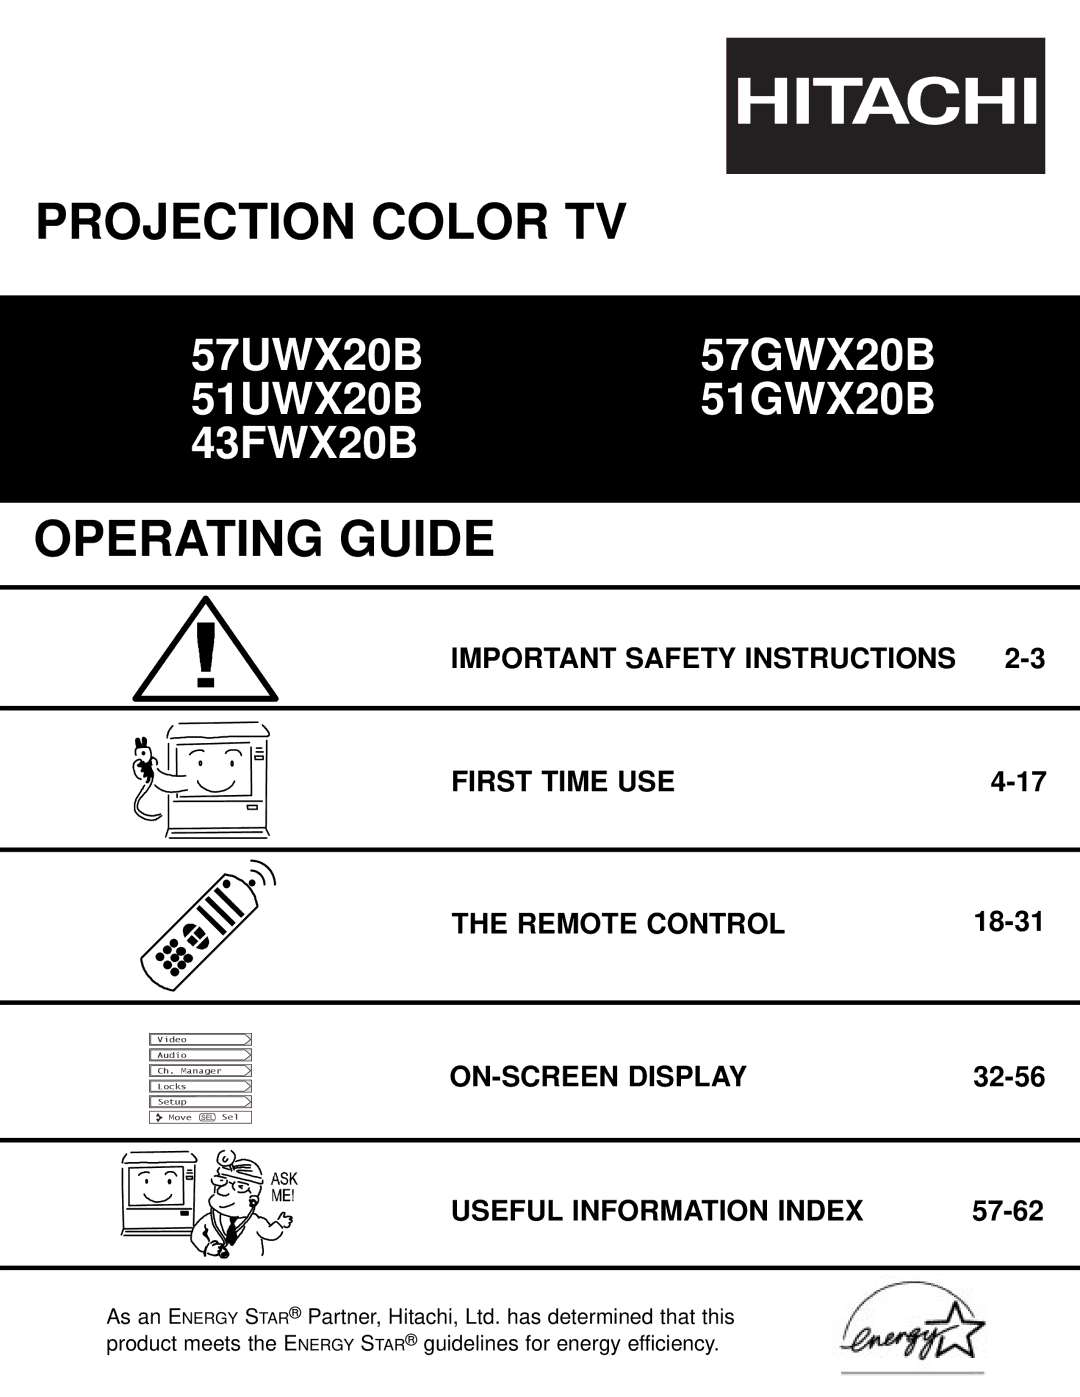 Hitachi 57GWX20B, 51GWX20B important safety instructions Important Safety Instructions First Time USE Remote Control 